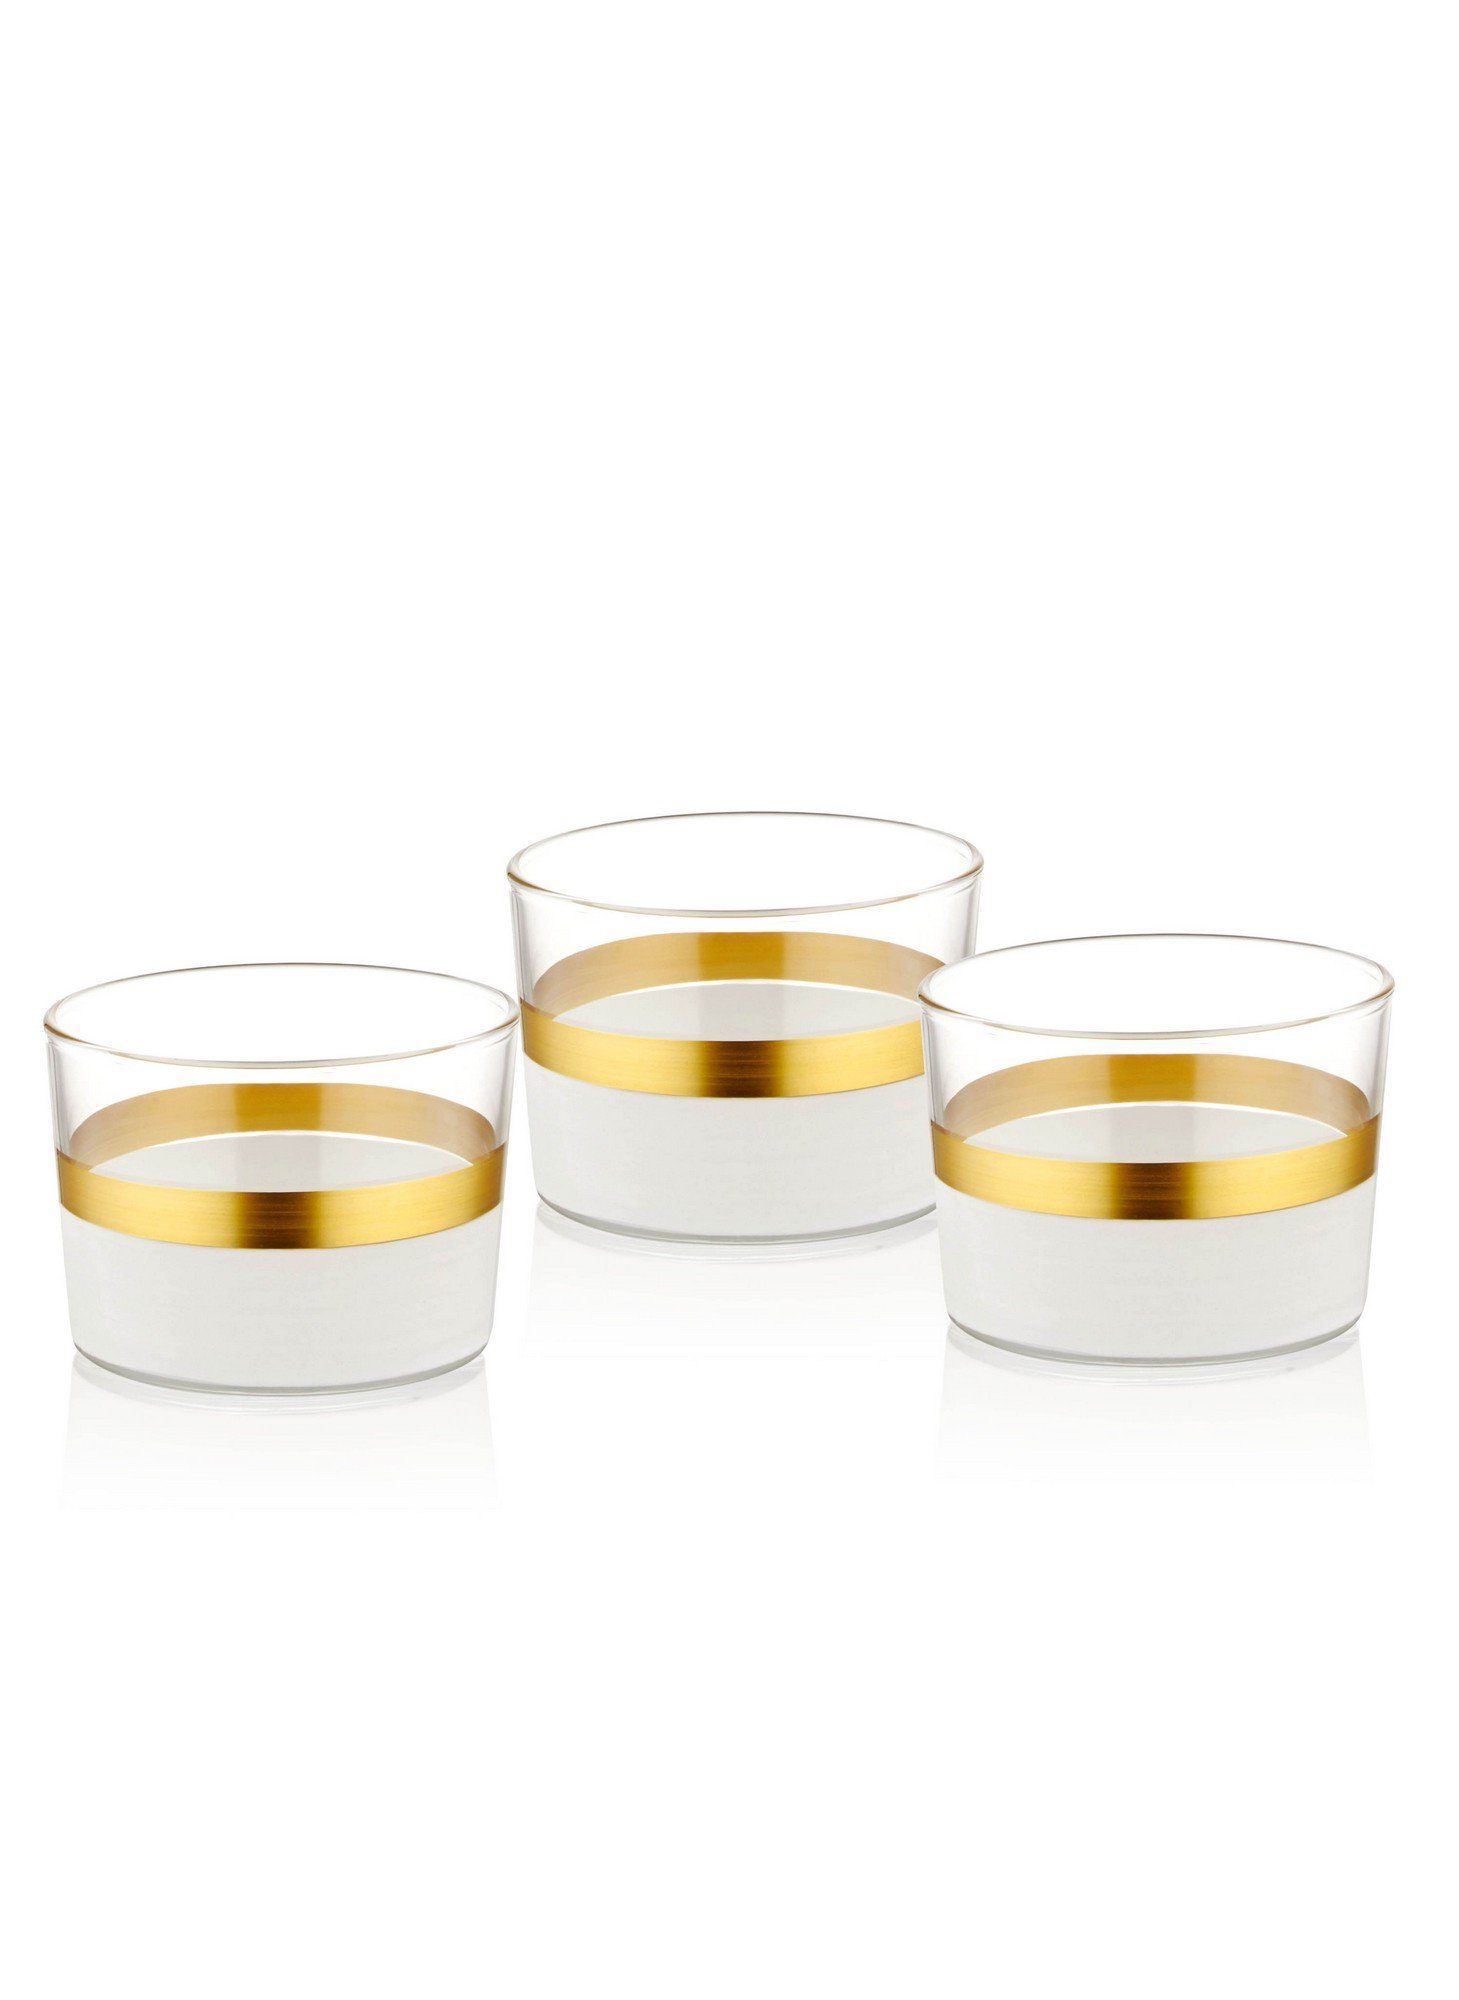 Glas TMA4765, Schüsseln, Weiß,Gold, Schüssel Concept Hermia 100%